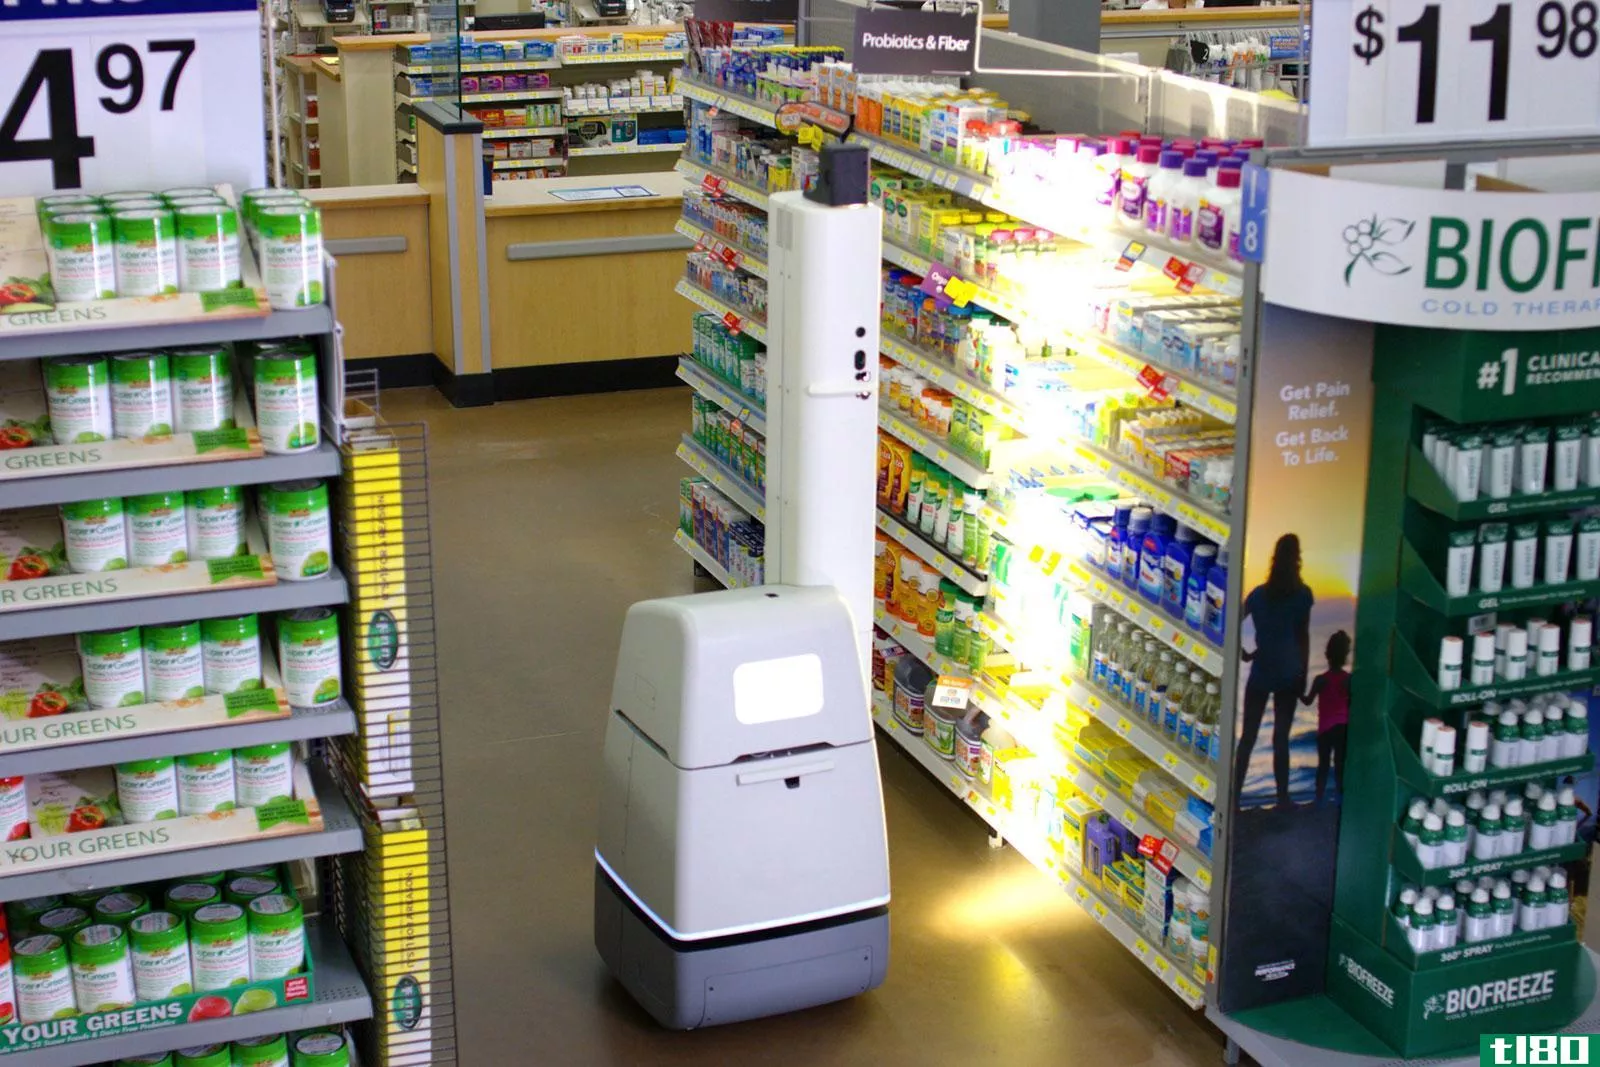 沃尔玛正在使用货架扫描机器人对其门店进行审计